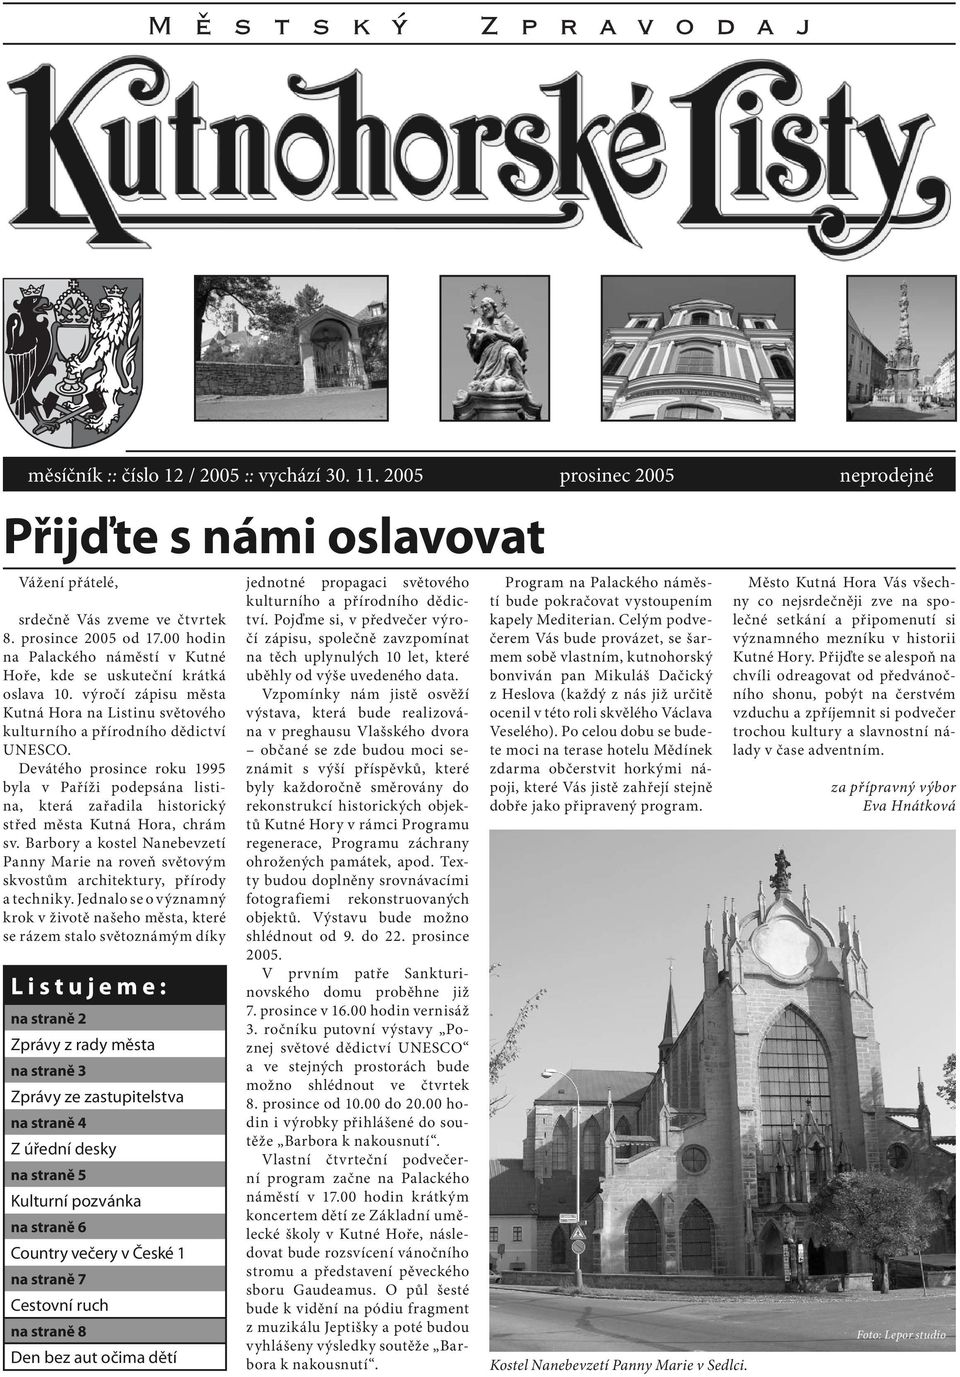 Devátého prosince roku 1995 byla v Paříži podepsána listina, která zařadila historický střed města Kutná Hora, chrám sv.